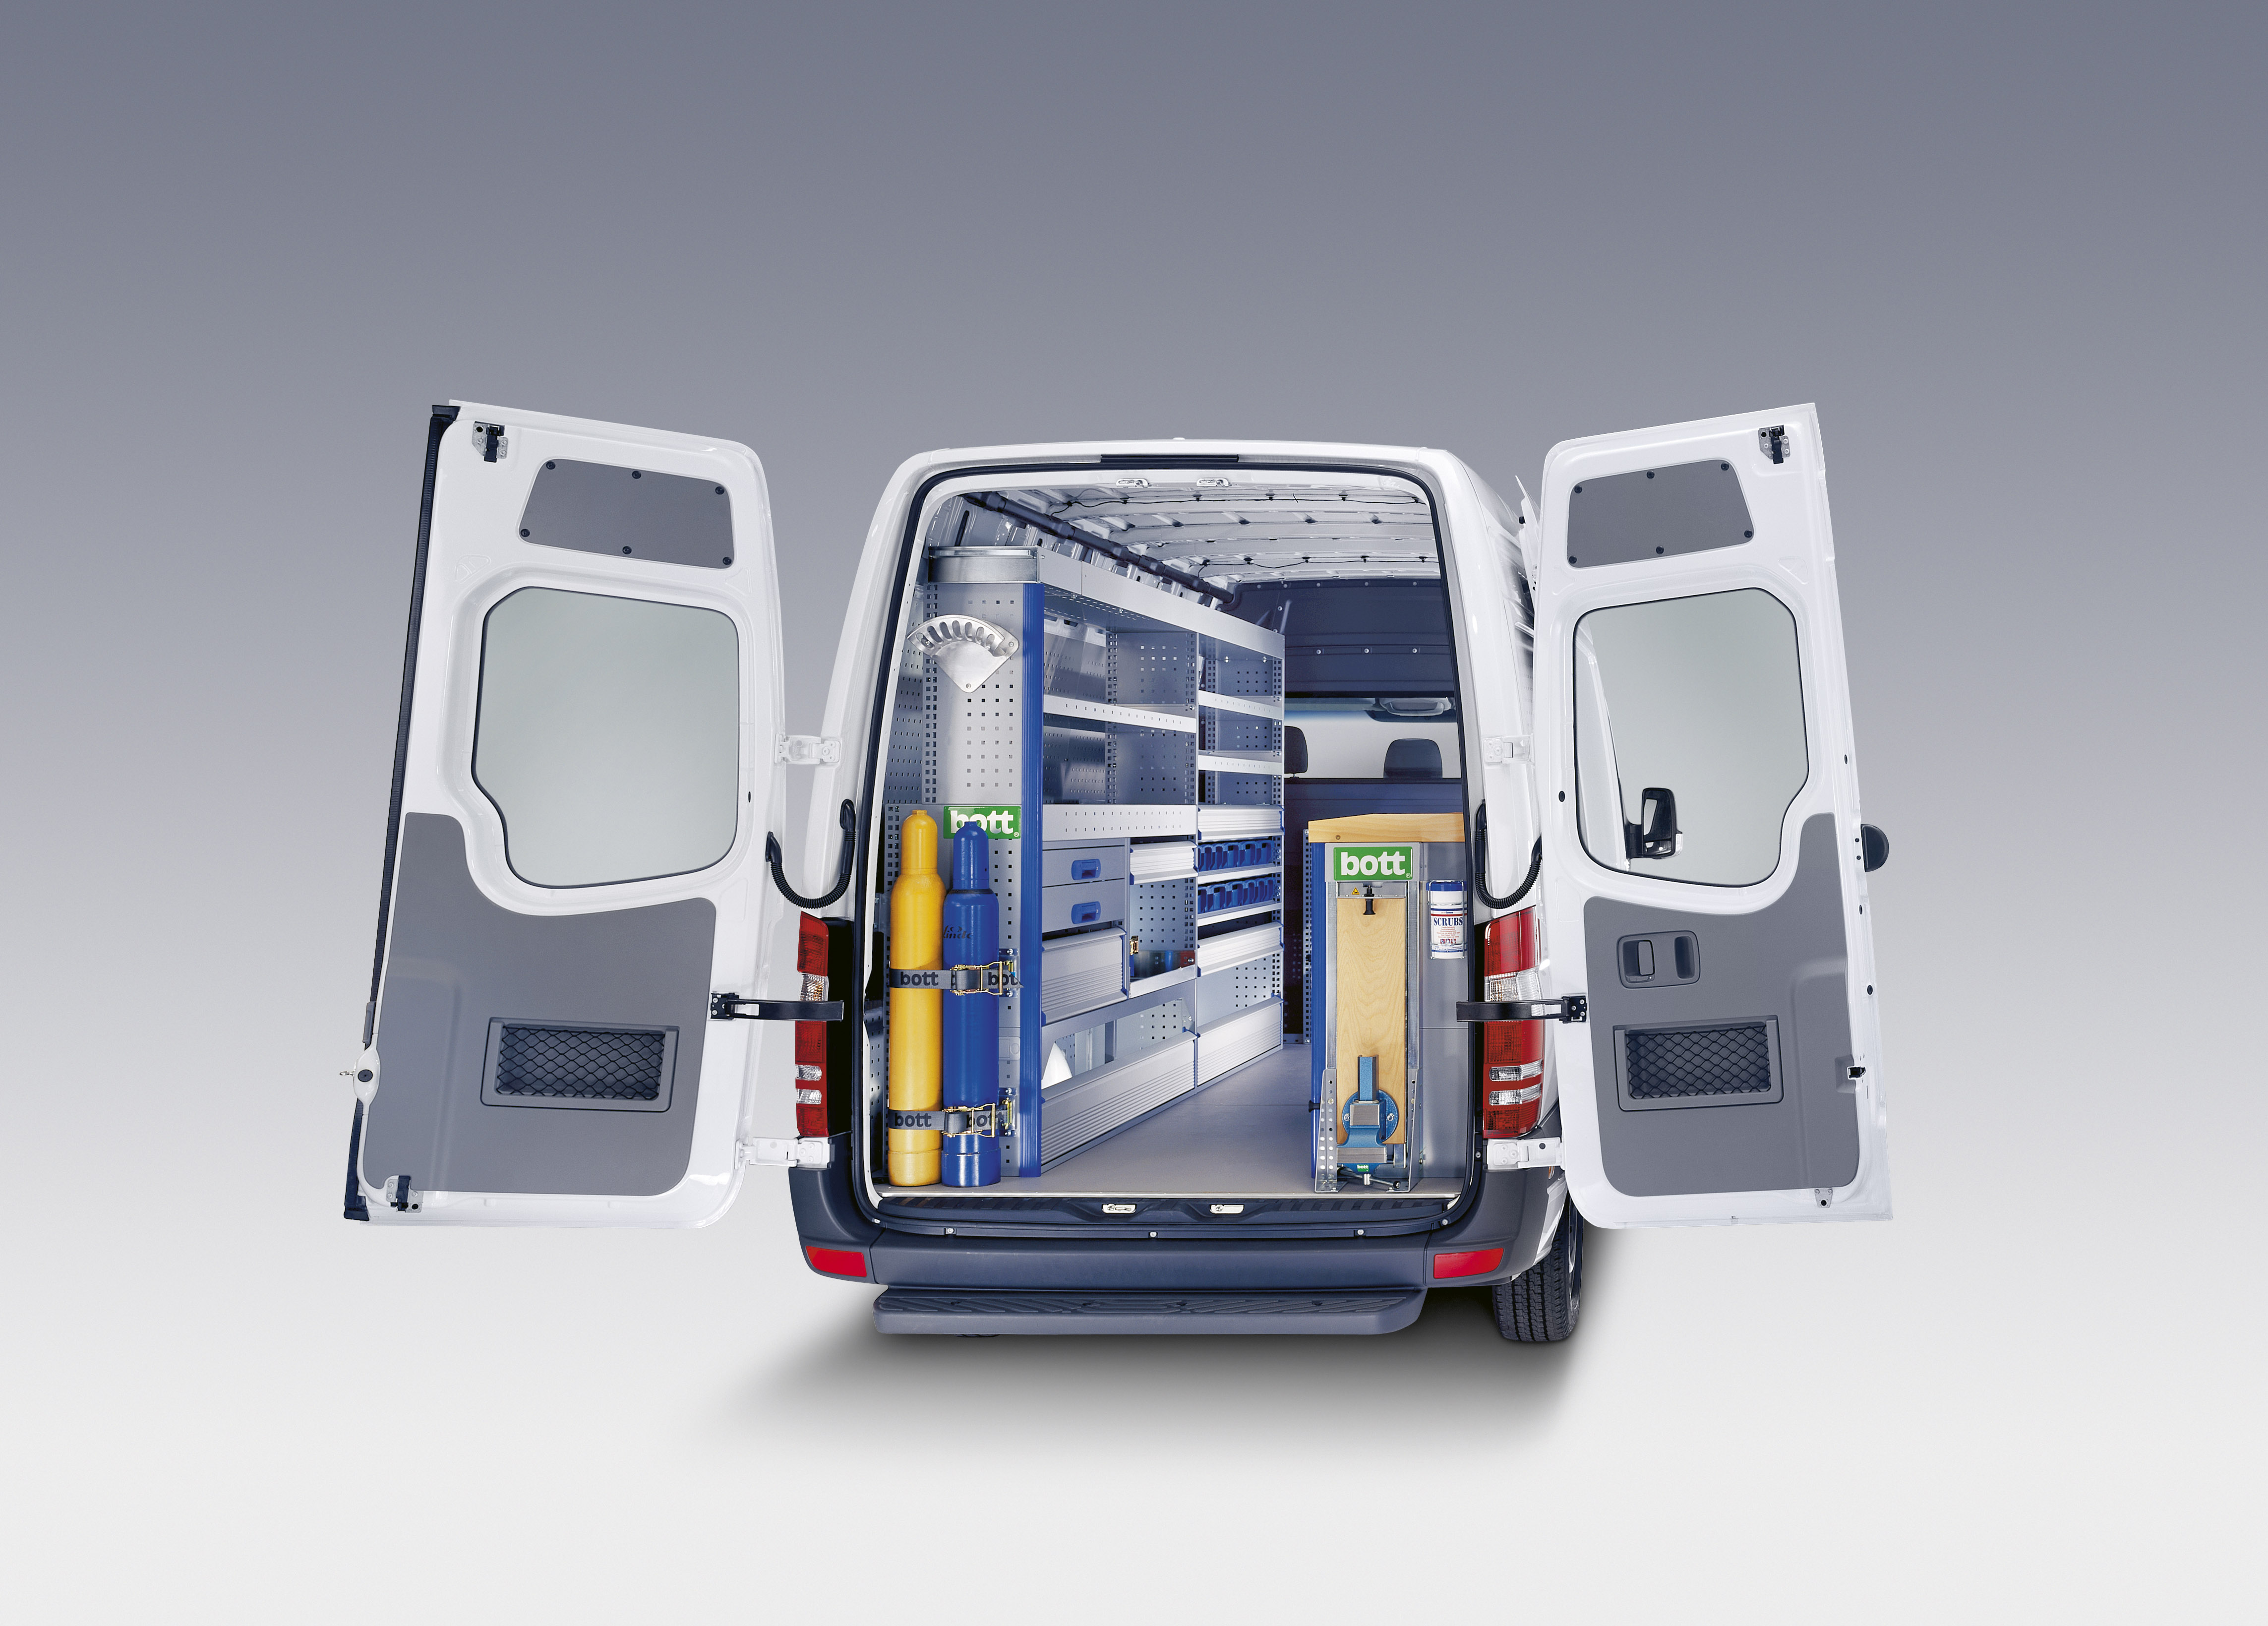 bott lanza una gama de productos de equipamiento para vehículos